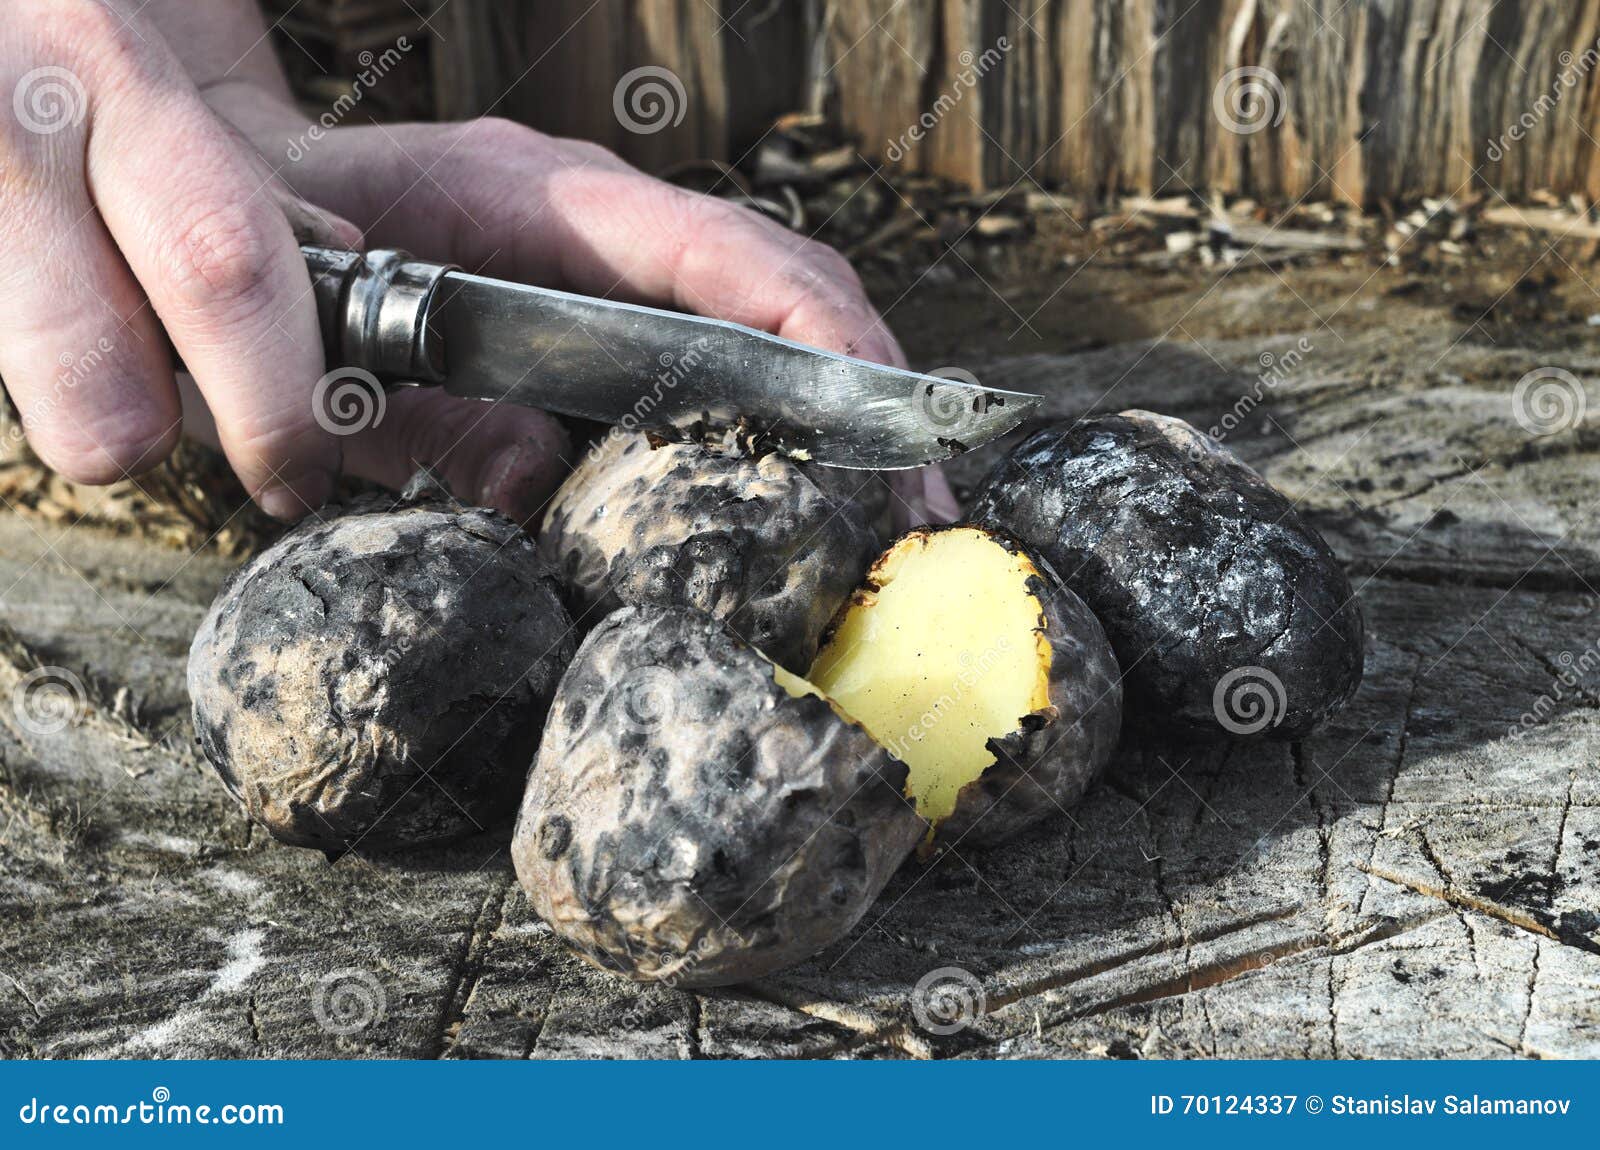 Печеный в золе. Печеная картошка в углях. Картошка на углях в костре. Картошка на костре. Печеный картофель на костре.